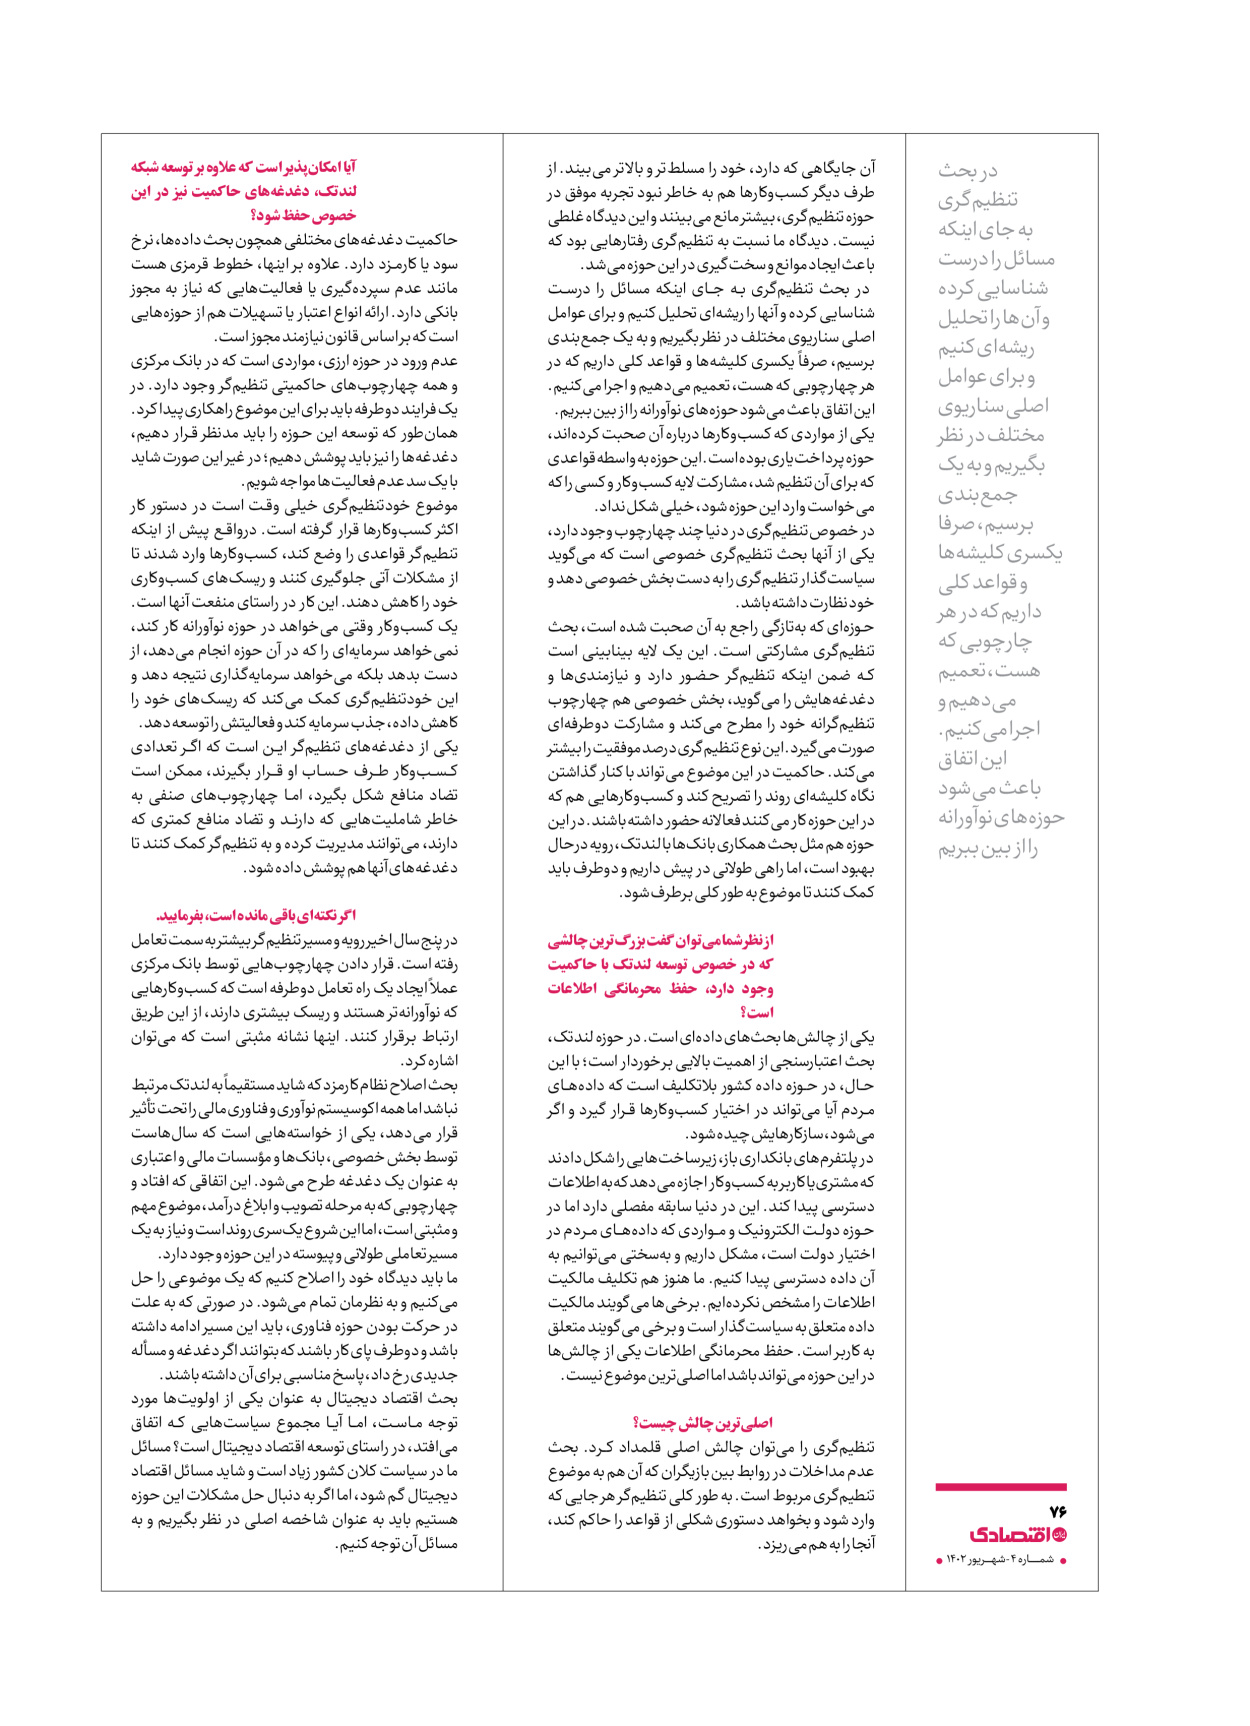 روزنامه ایران اقتصادی - ویژه نامه اقتصادی۴ - ۰۴ شهریور ۱۴۰۲ - صفحه ۷۶